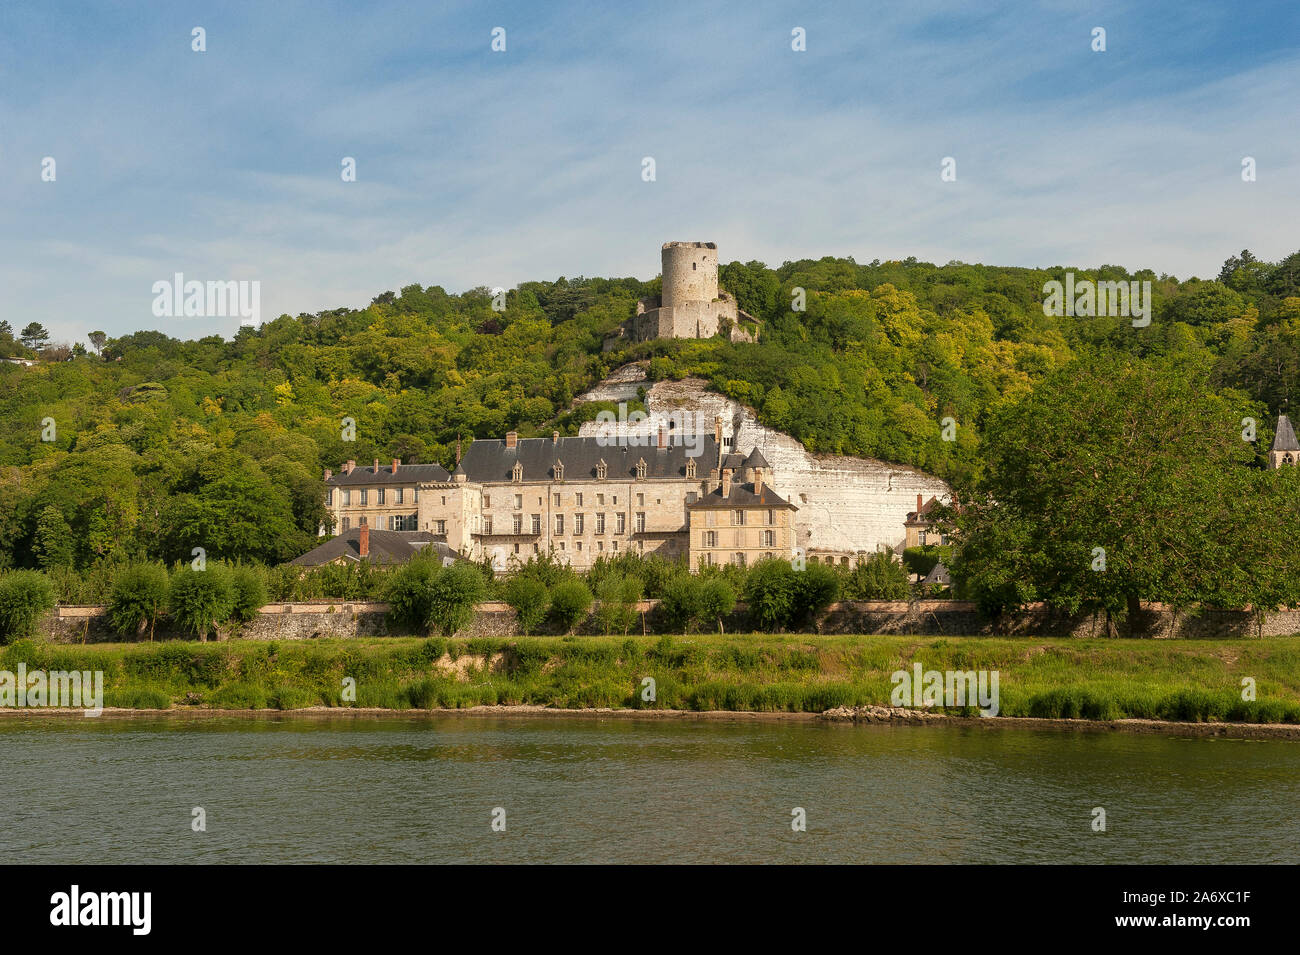 Das Schloss von La Roche-Guyon in das Tal der Seine in der Nähe der Grenze der Île-de-France und die Normandie, Frankreich Stockfoto